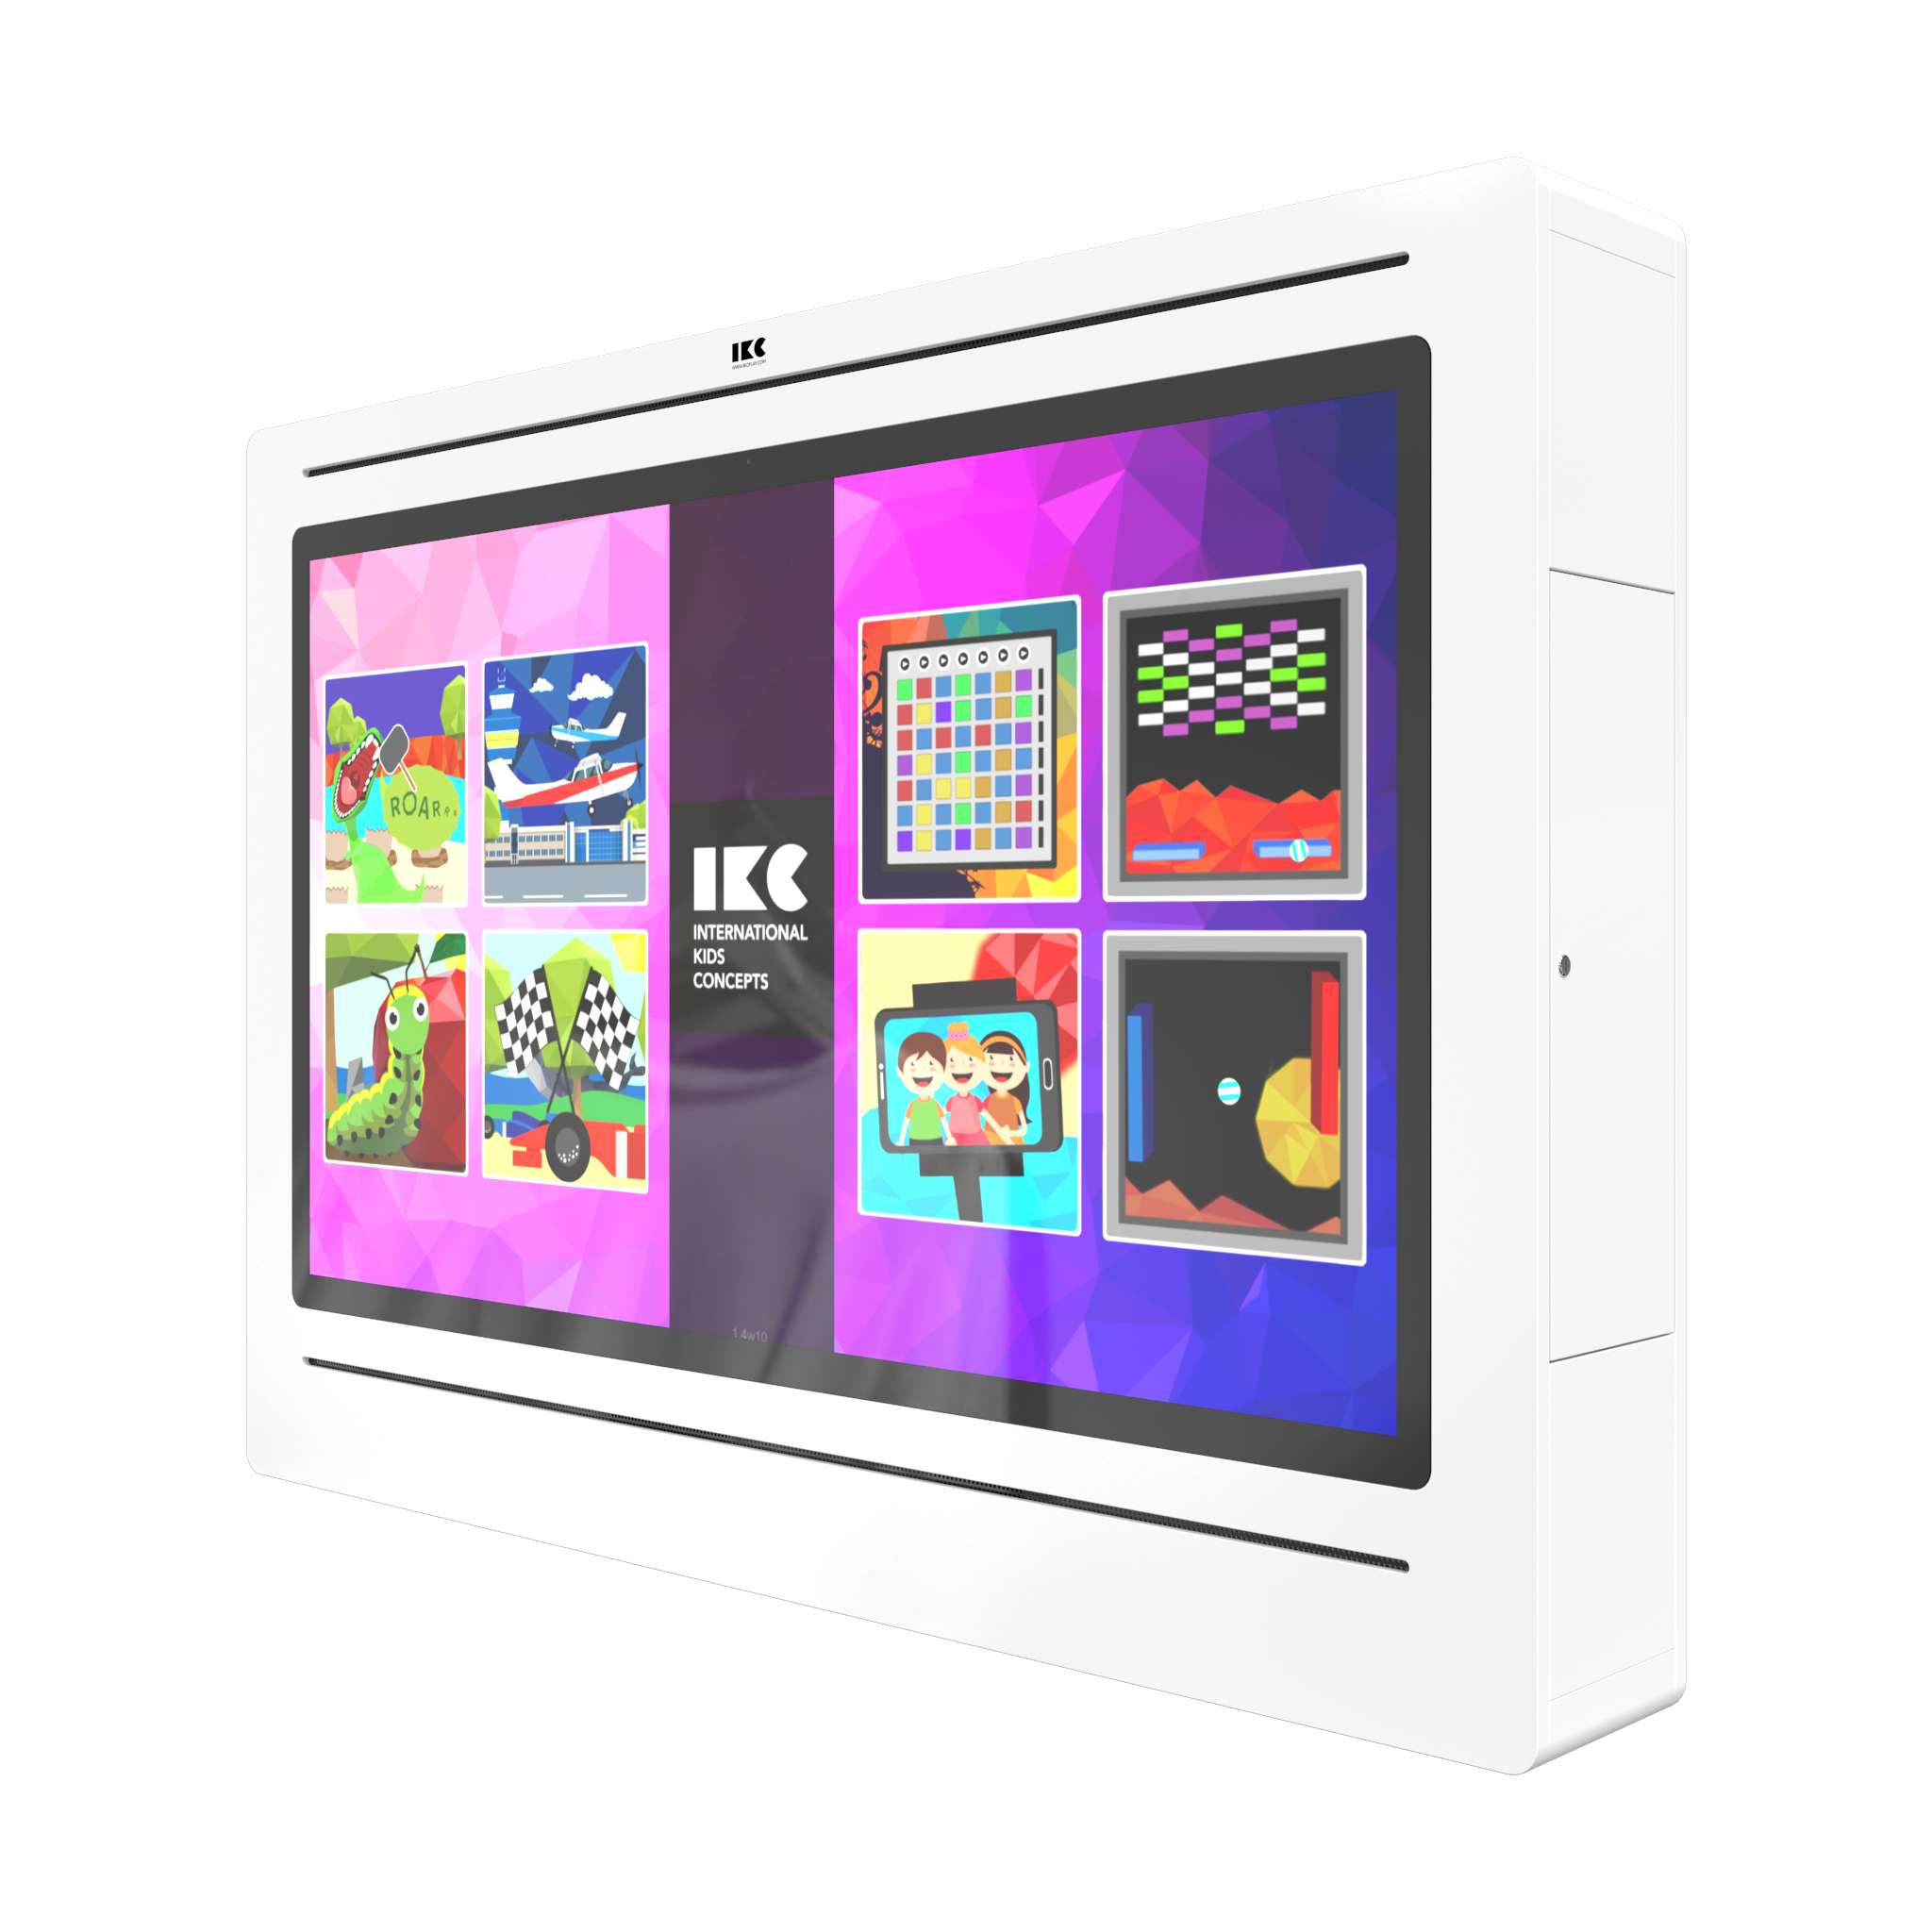 L'image montre un système de jeu interactif Delta 65 inch